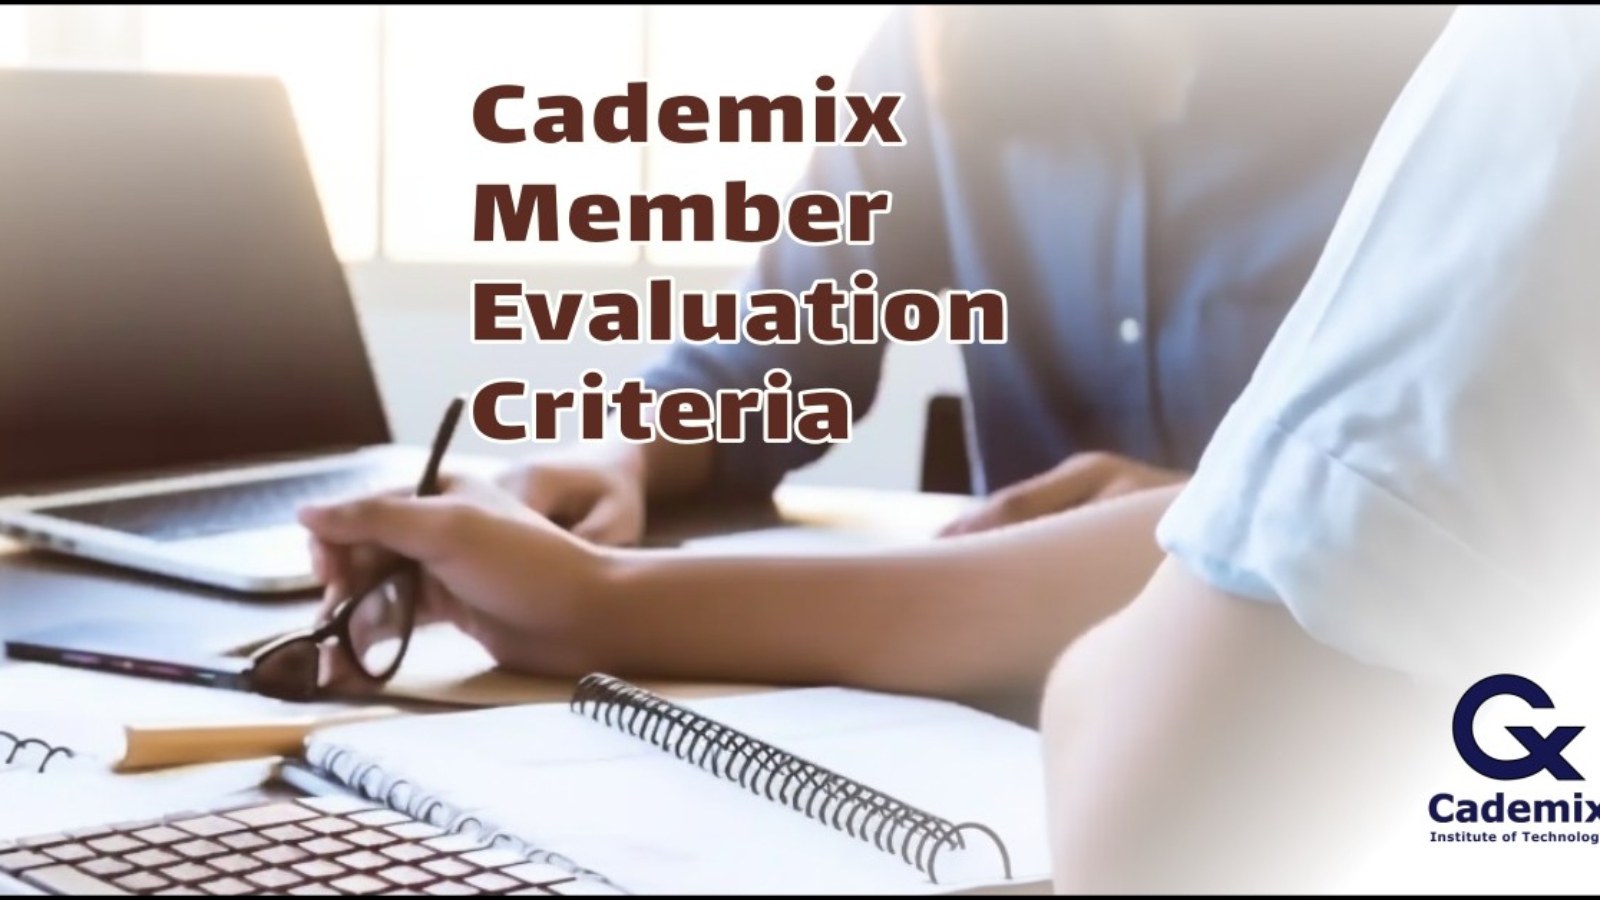 Cademix Member Evaluation Criteria